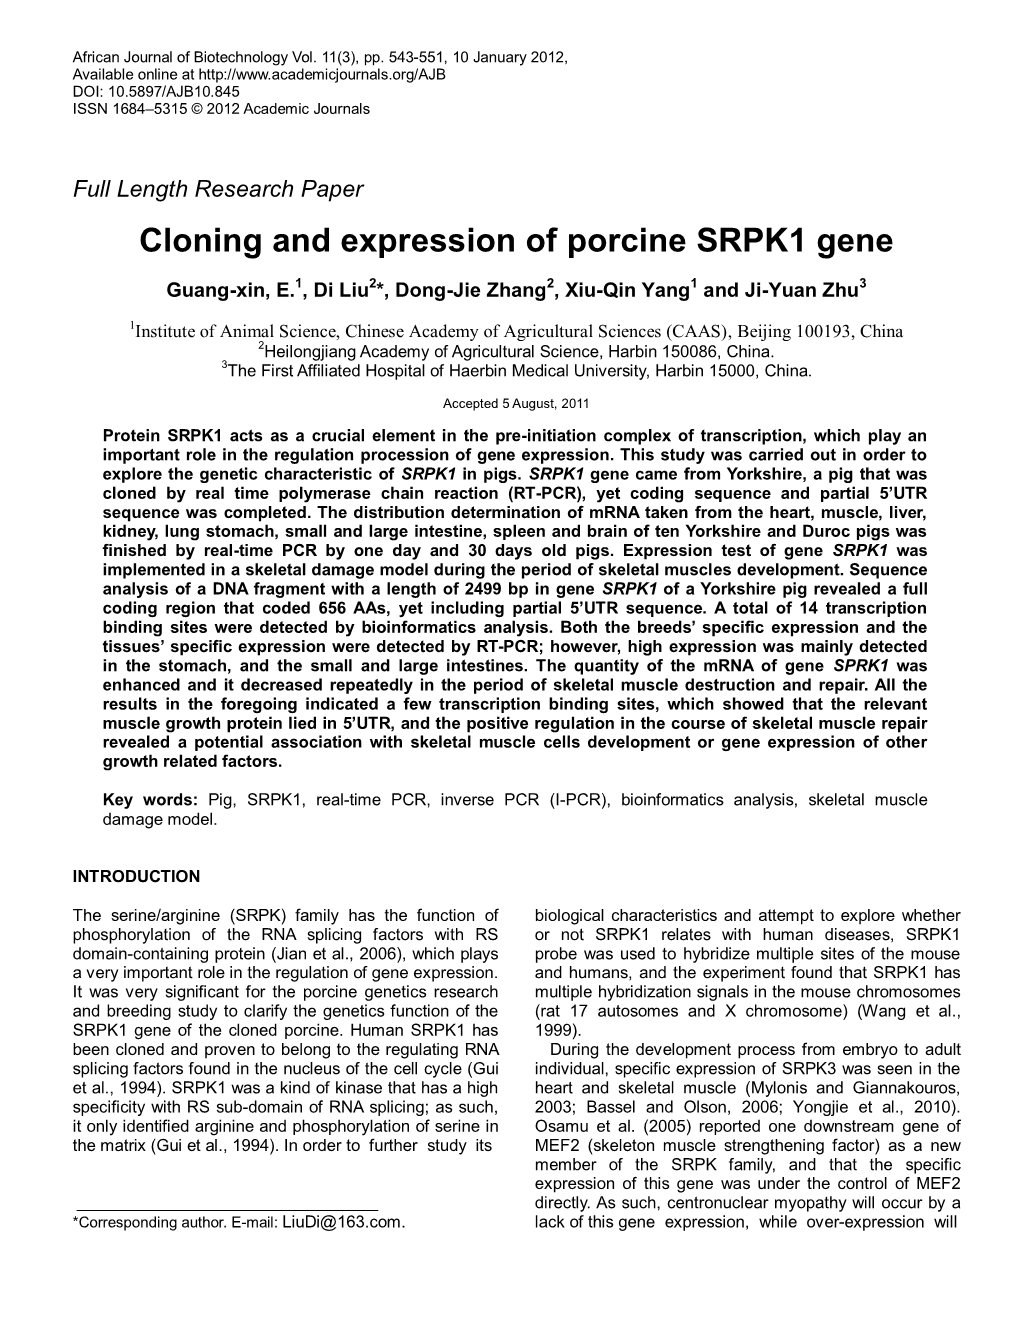 Cloning and Expression of Porcine SRPK1 Gene